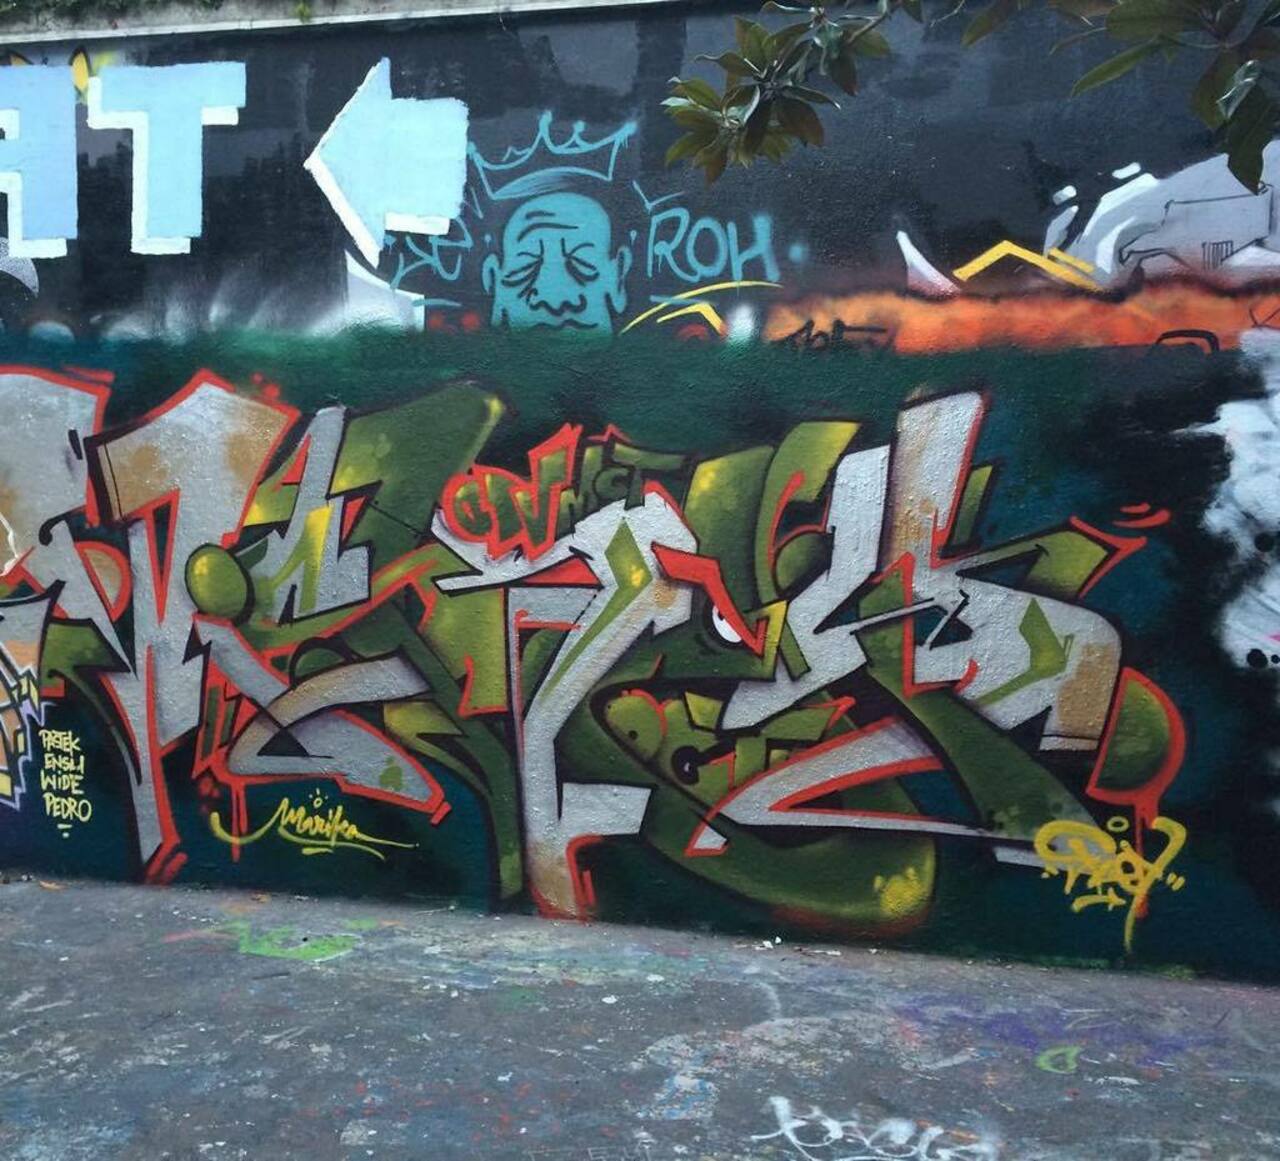 RT @artpushr: via #insta_fdy "http://ift.tt/1VhiBXx" #graffiti #streetart http://t.co/0j8r9um2la